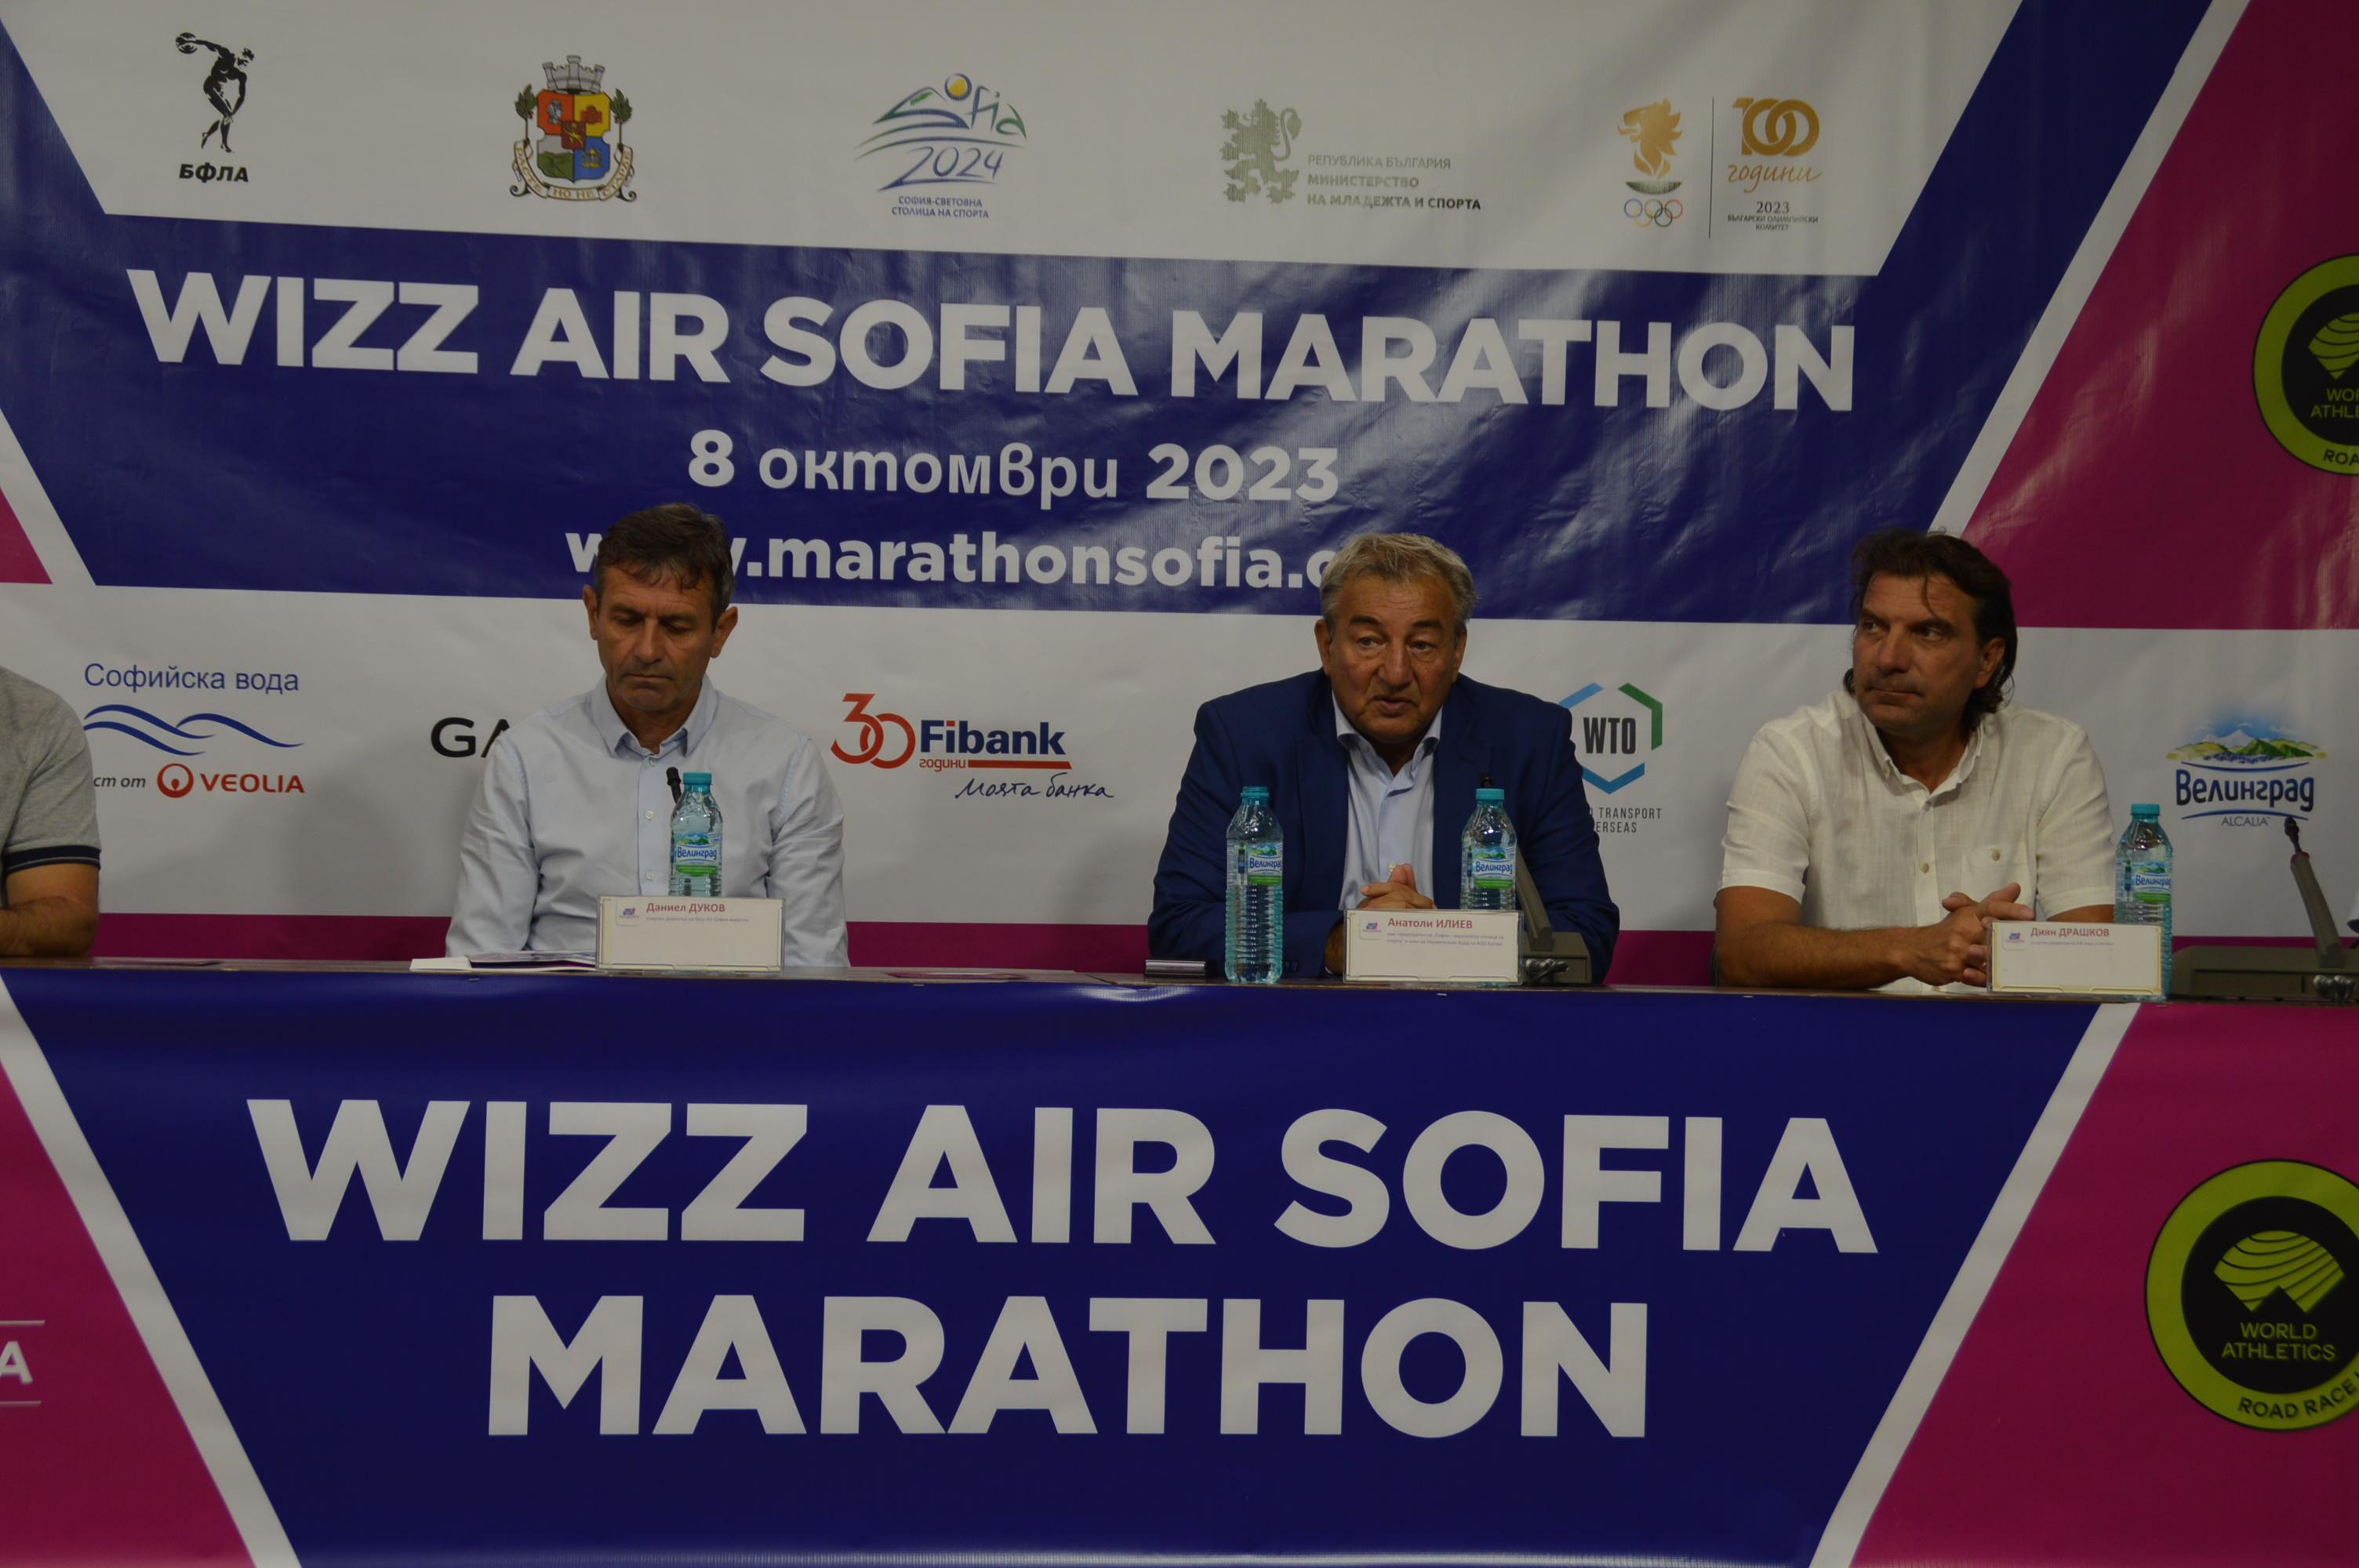 Променят масовия старт на Wizz Air София маратон